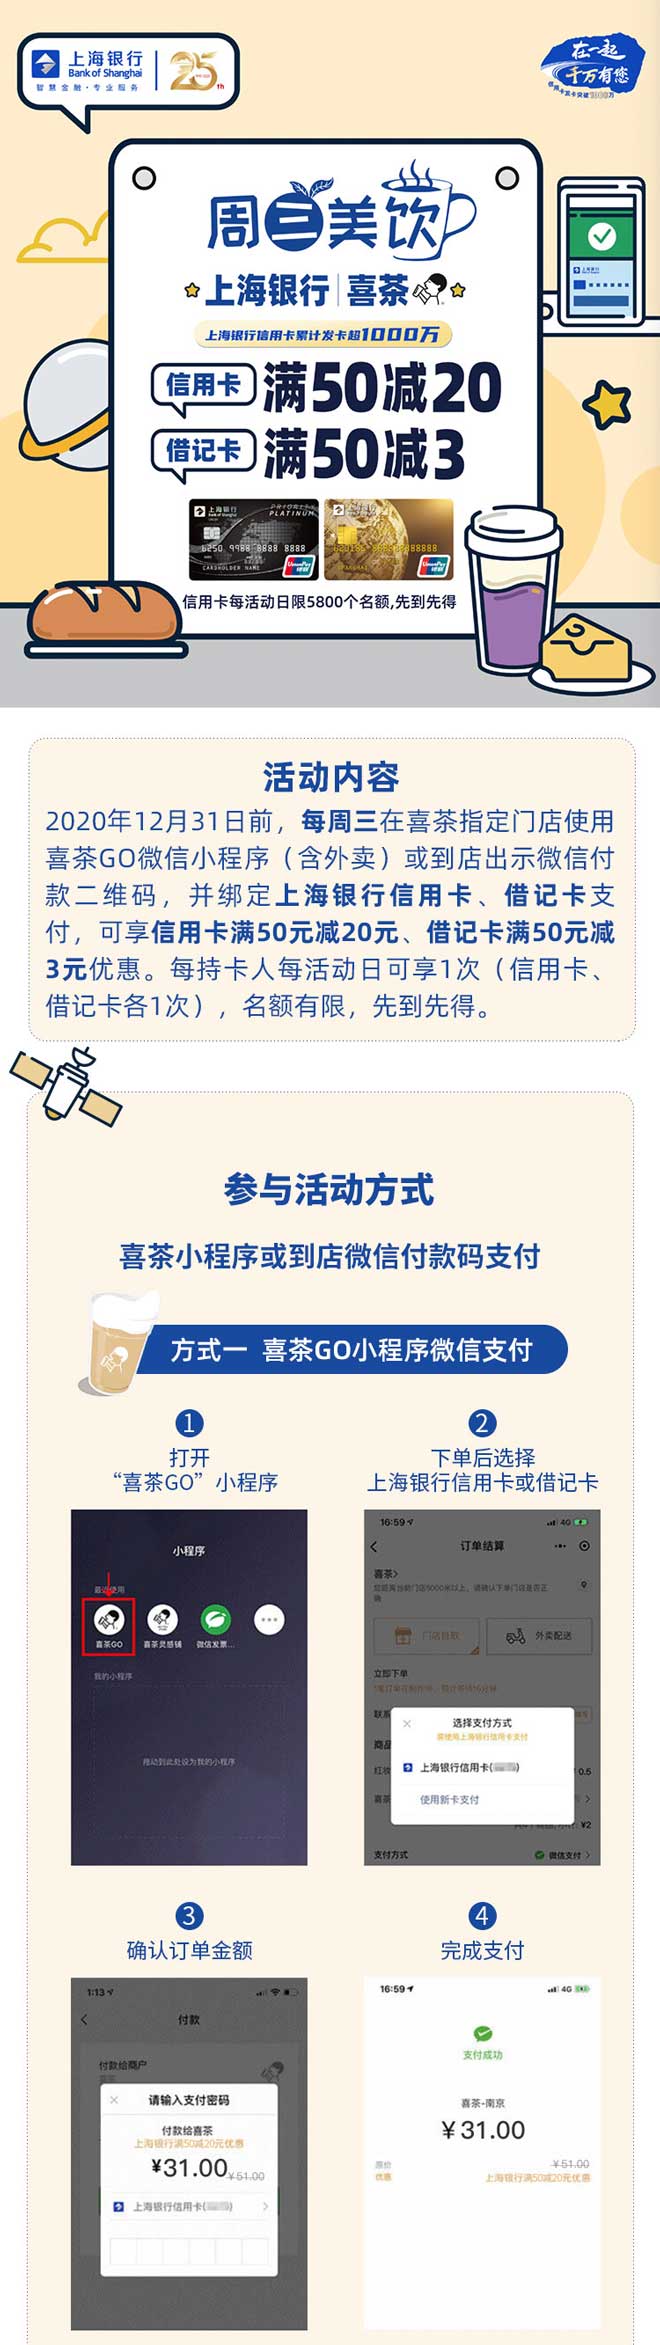 上海银行喜茶每周三信用卡满50减20元、借记卡满50减3元